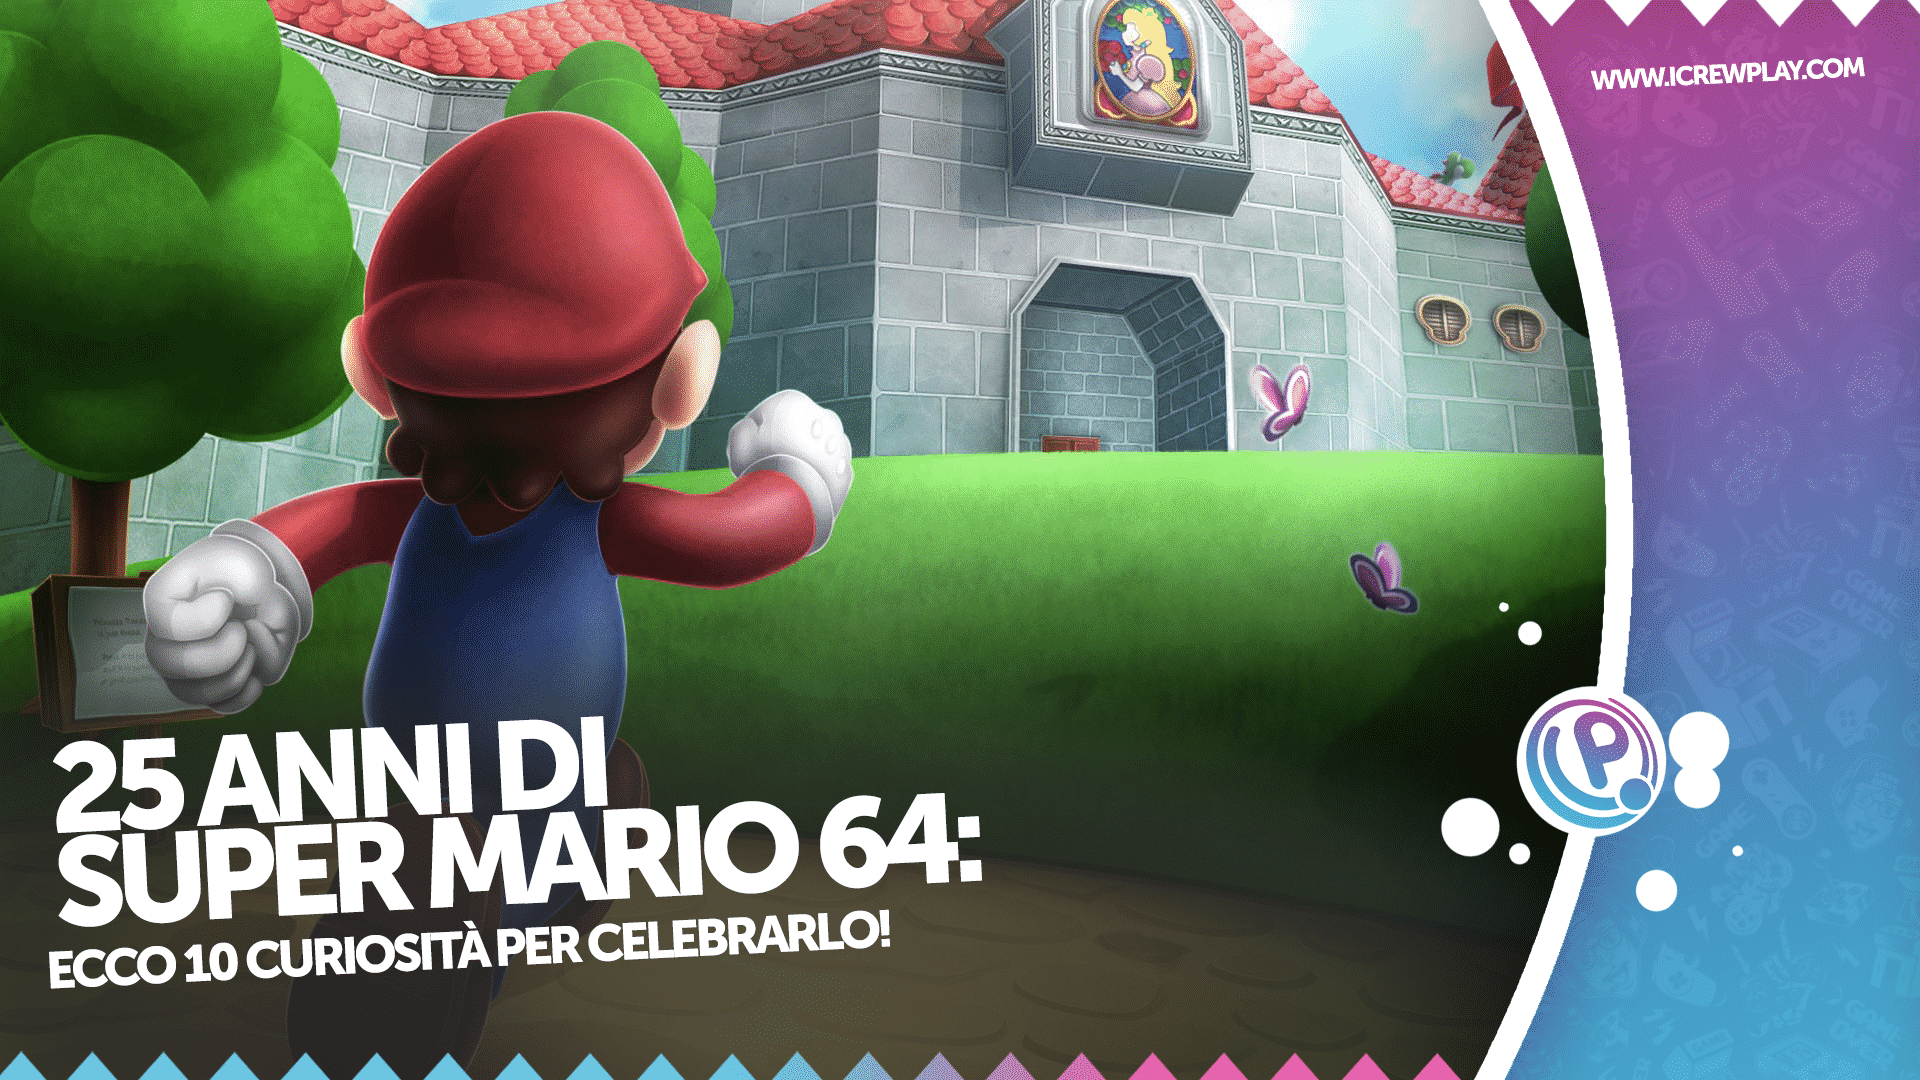 25 anni di Super Mario 64: ecco 10 curiosità per celebrarlo! 4